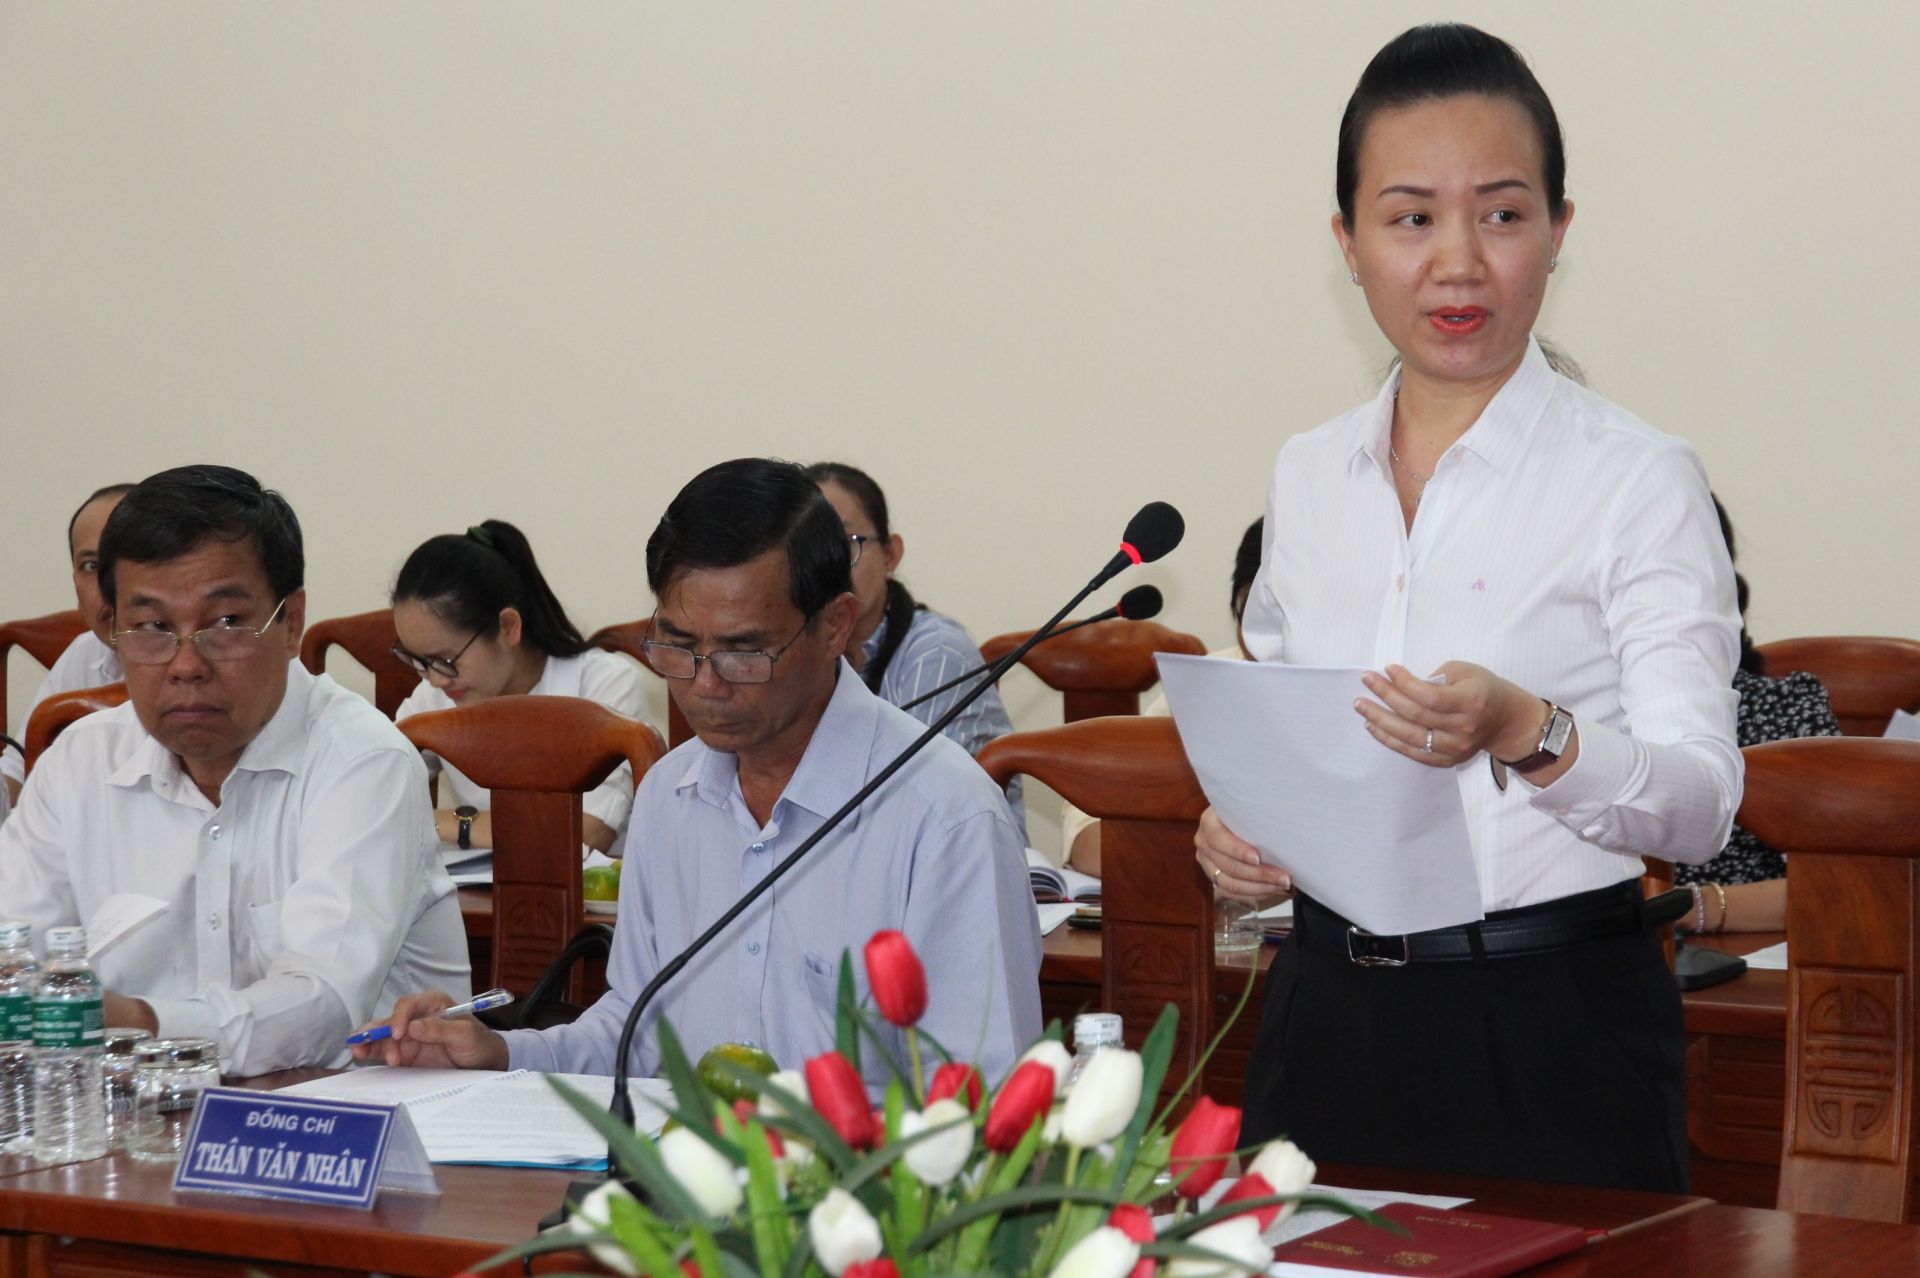 Điểm báo in Tây Ninh ngày 17.04.2019